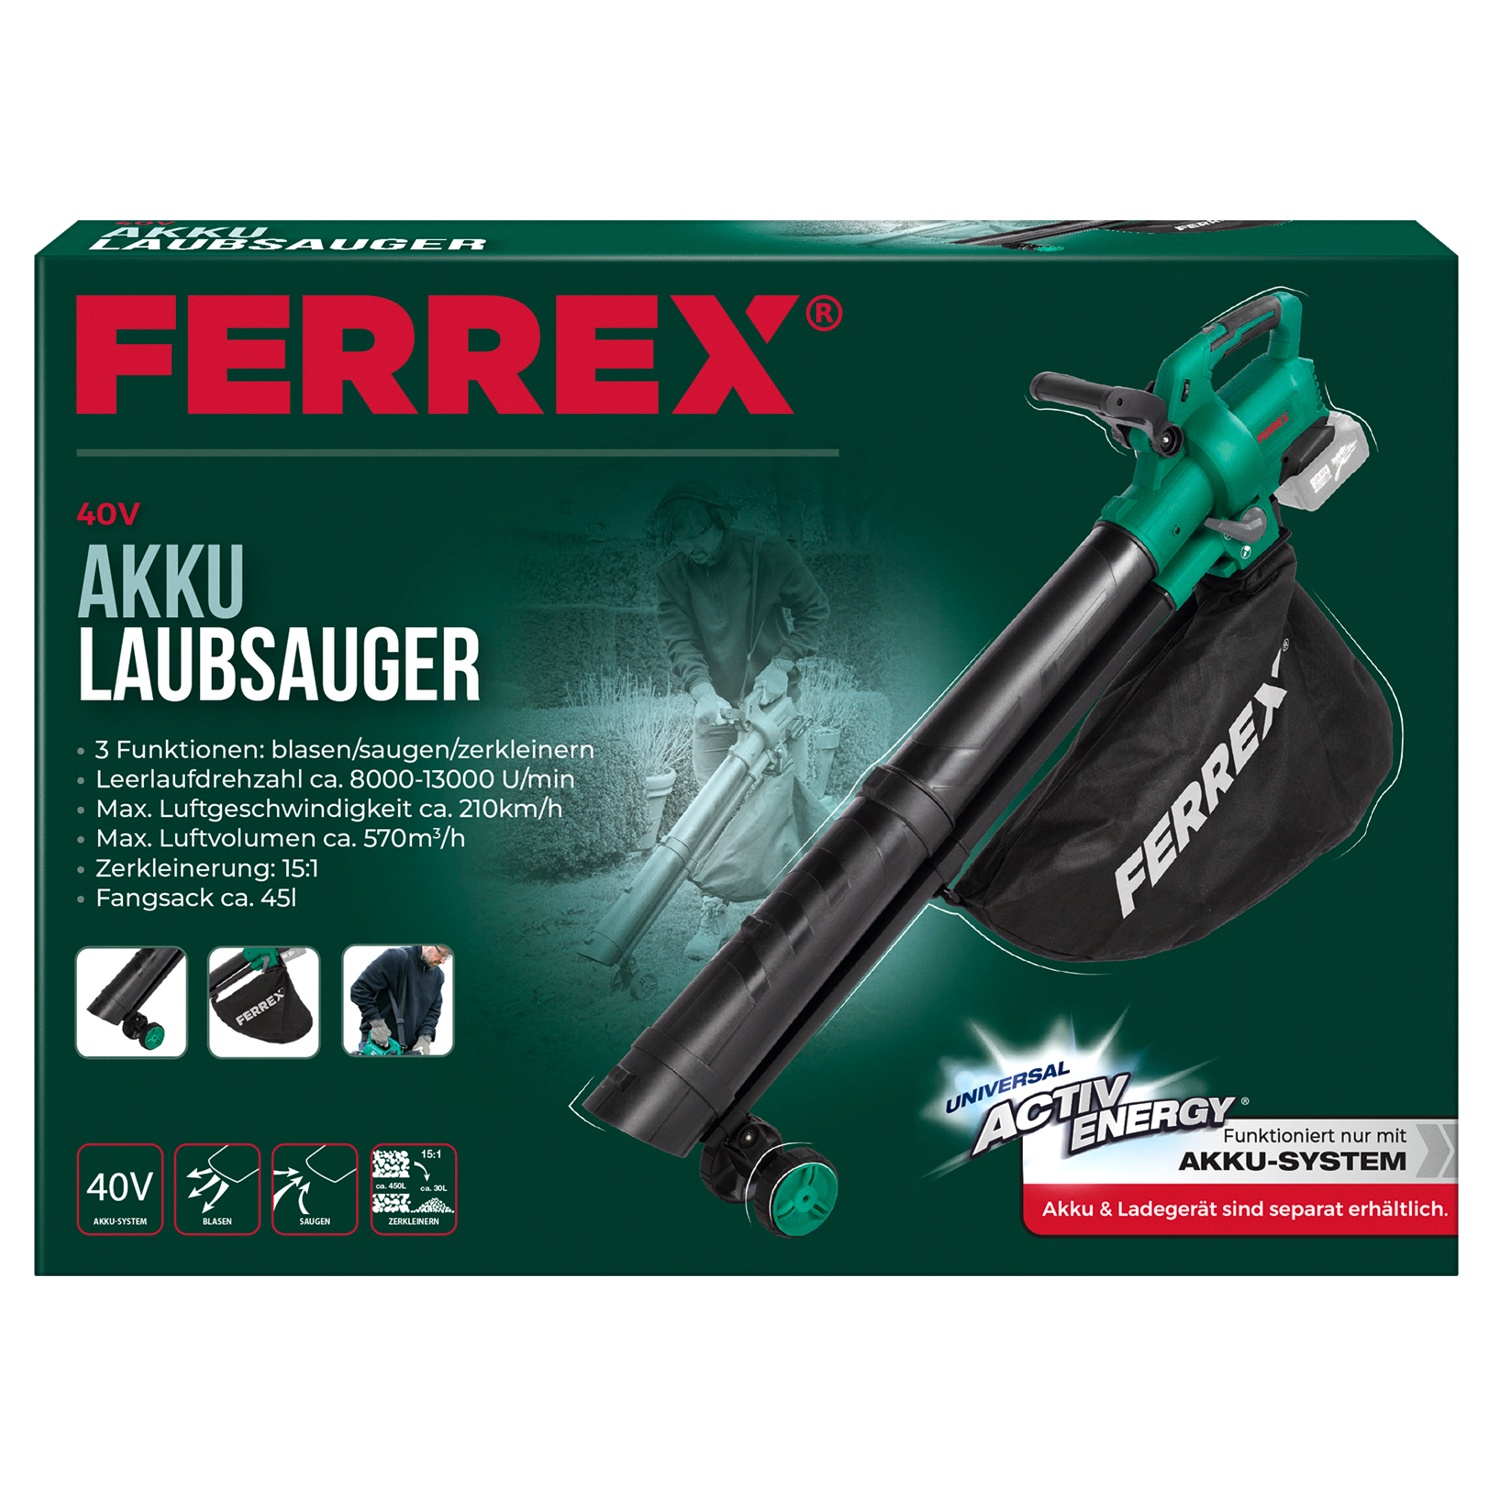 FERREX® 40 V Akku-Laubsauger